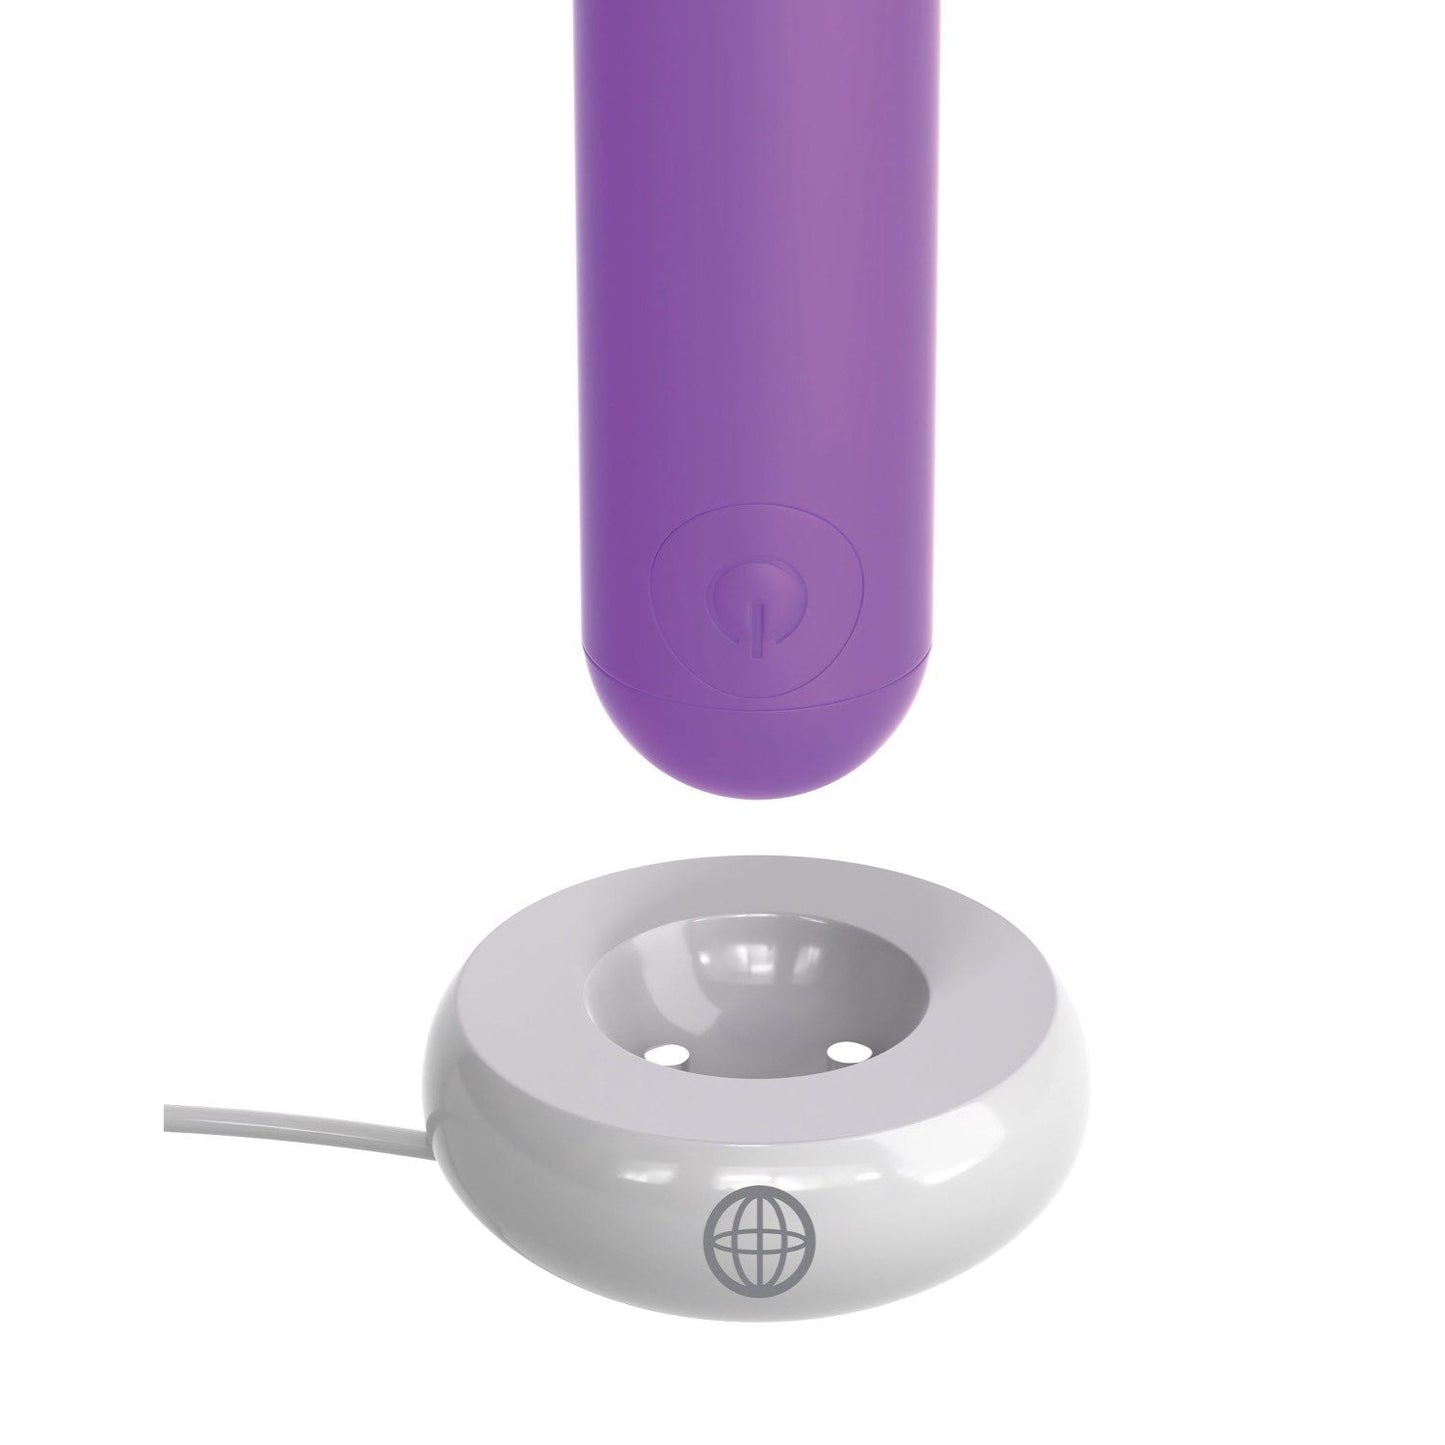 Rechargable Bullet - Purple 9.1 cm (3.5") USB Rechargeable Bullet